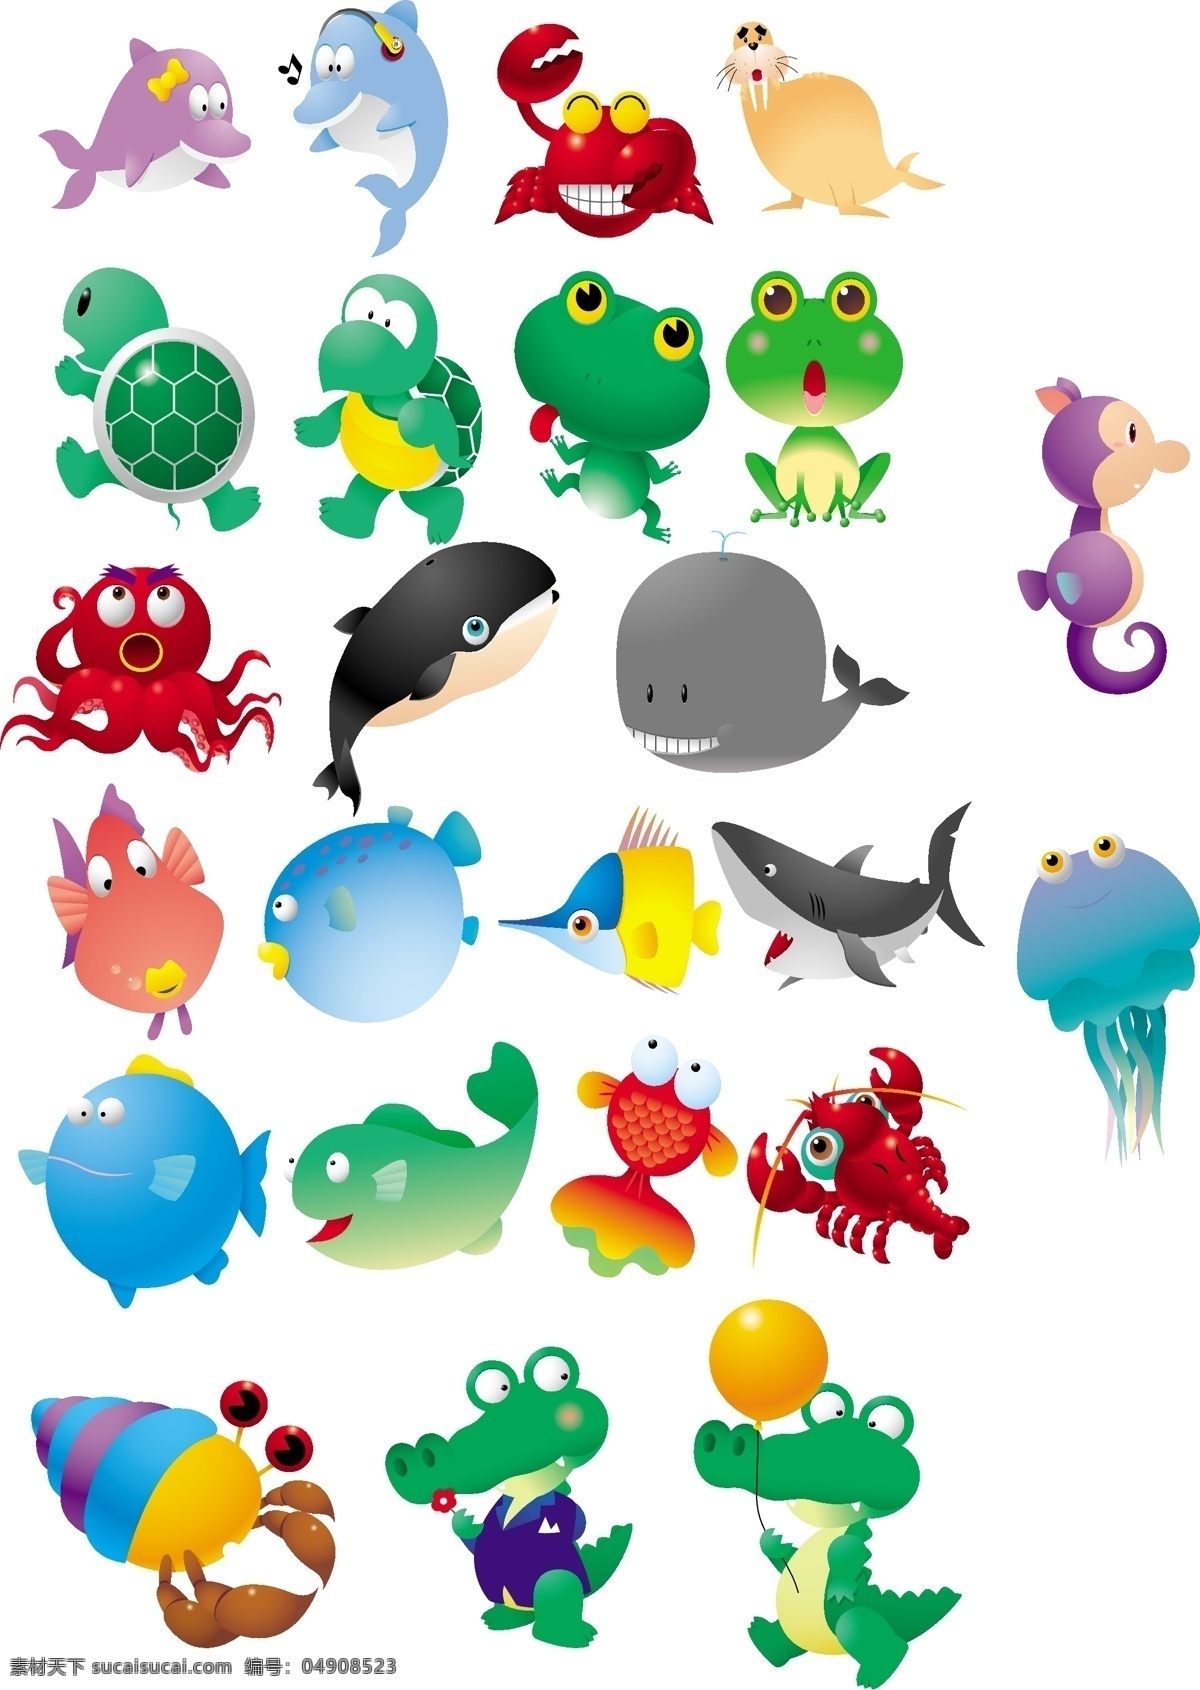 海洋生物 海底 世界 鱼 动物 百科 大全 生物世界 其他生物 动物大全 矢量图库